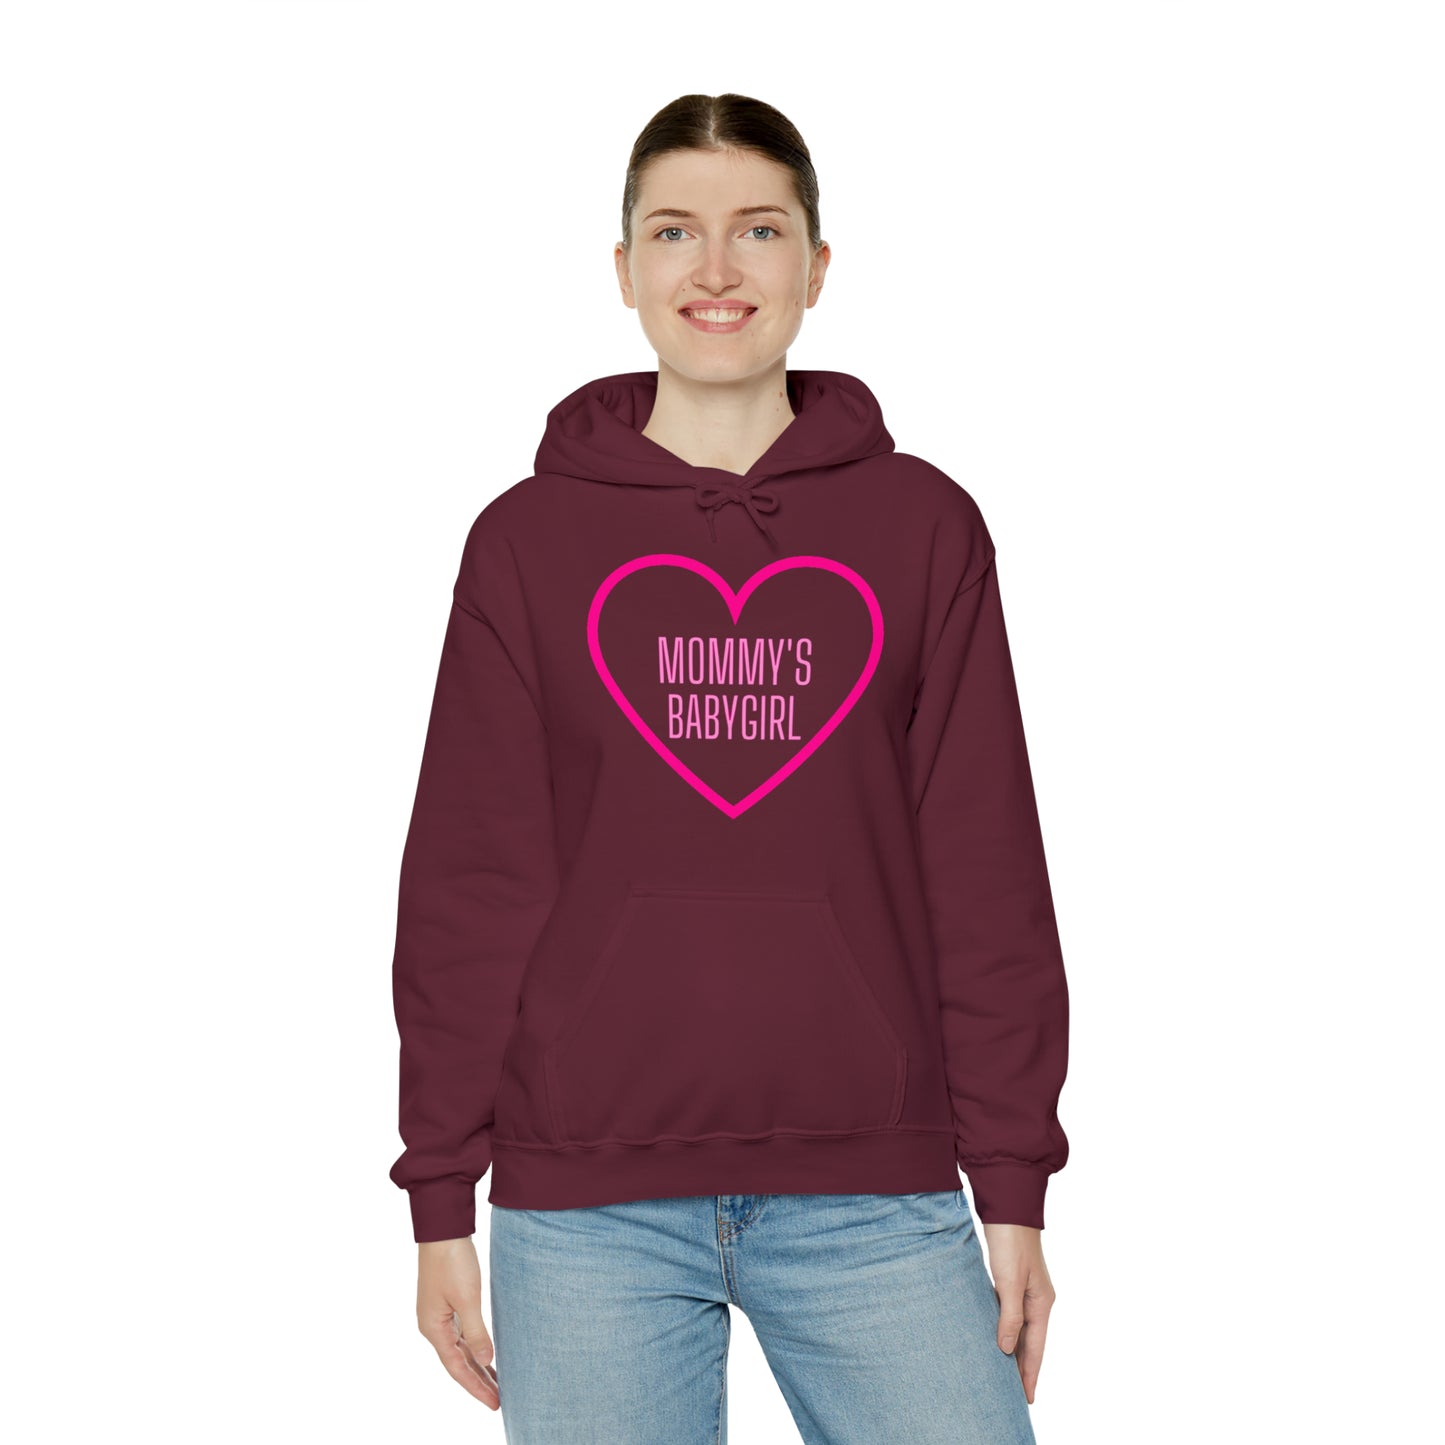 Mommy's Babygirl Unisex Hooded Sweatshirt